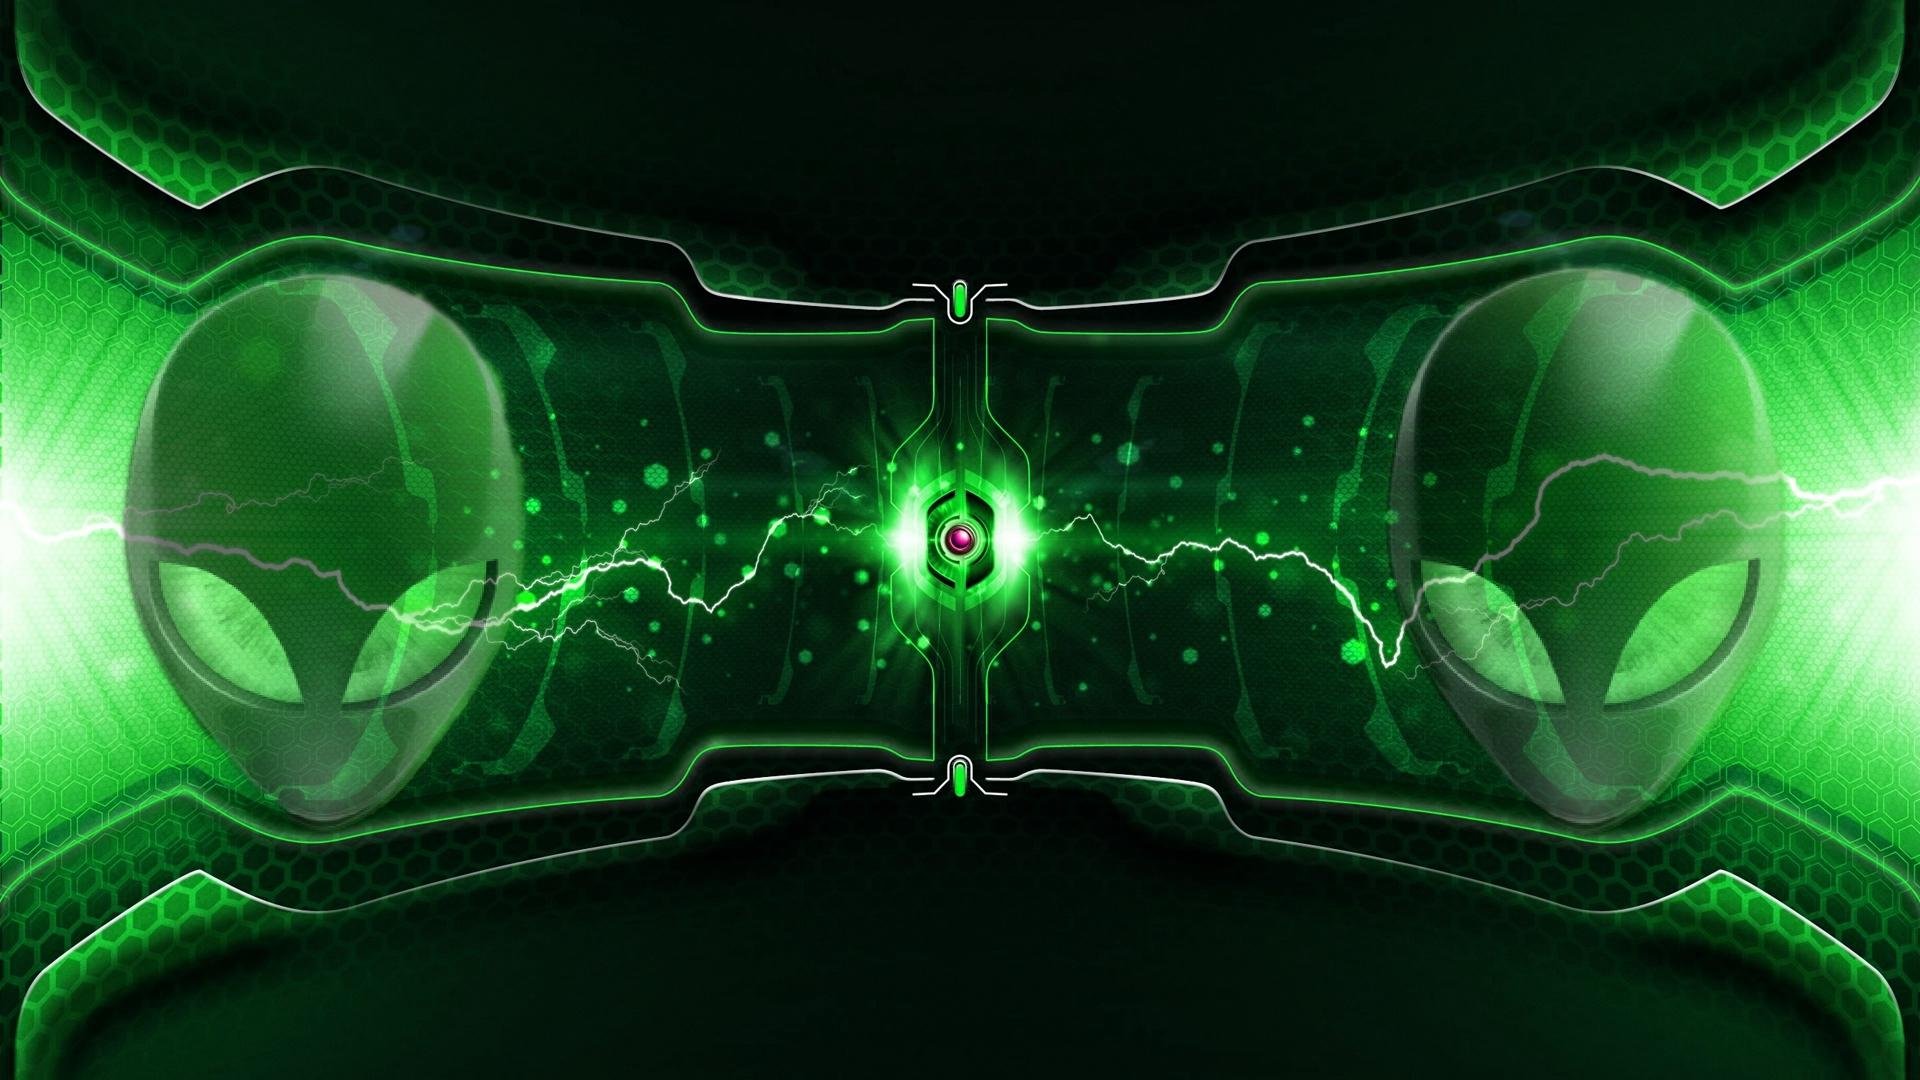 Green Alienware Wallpaper 1080p - 1920x1080 Wallpaper 